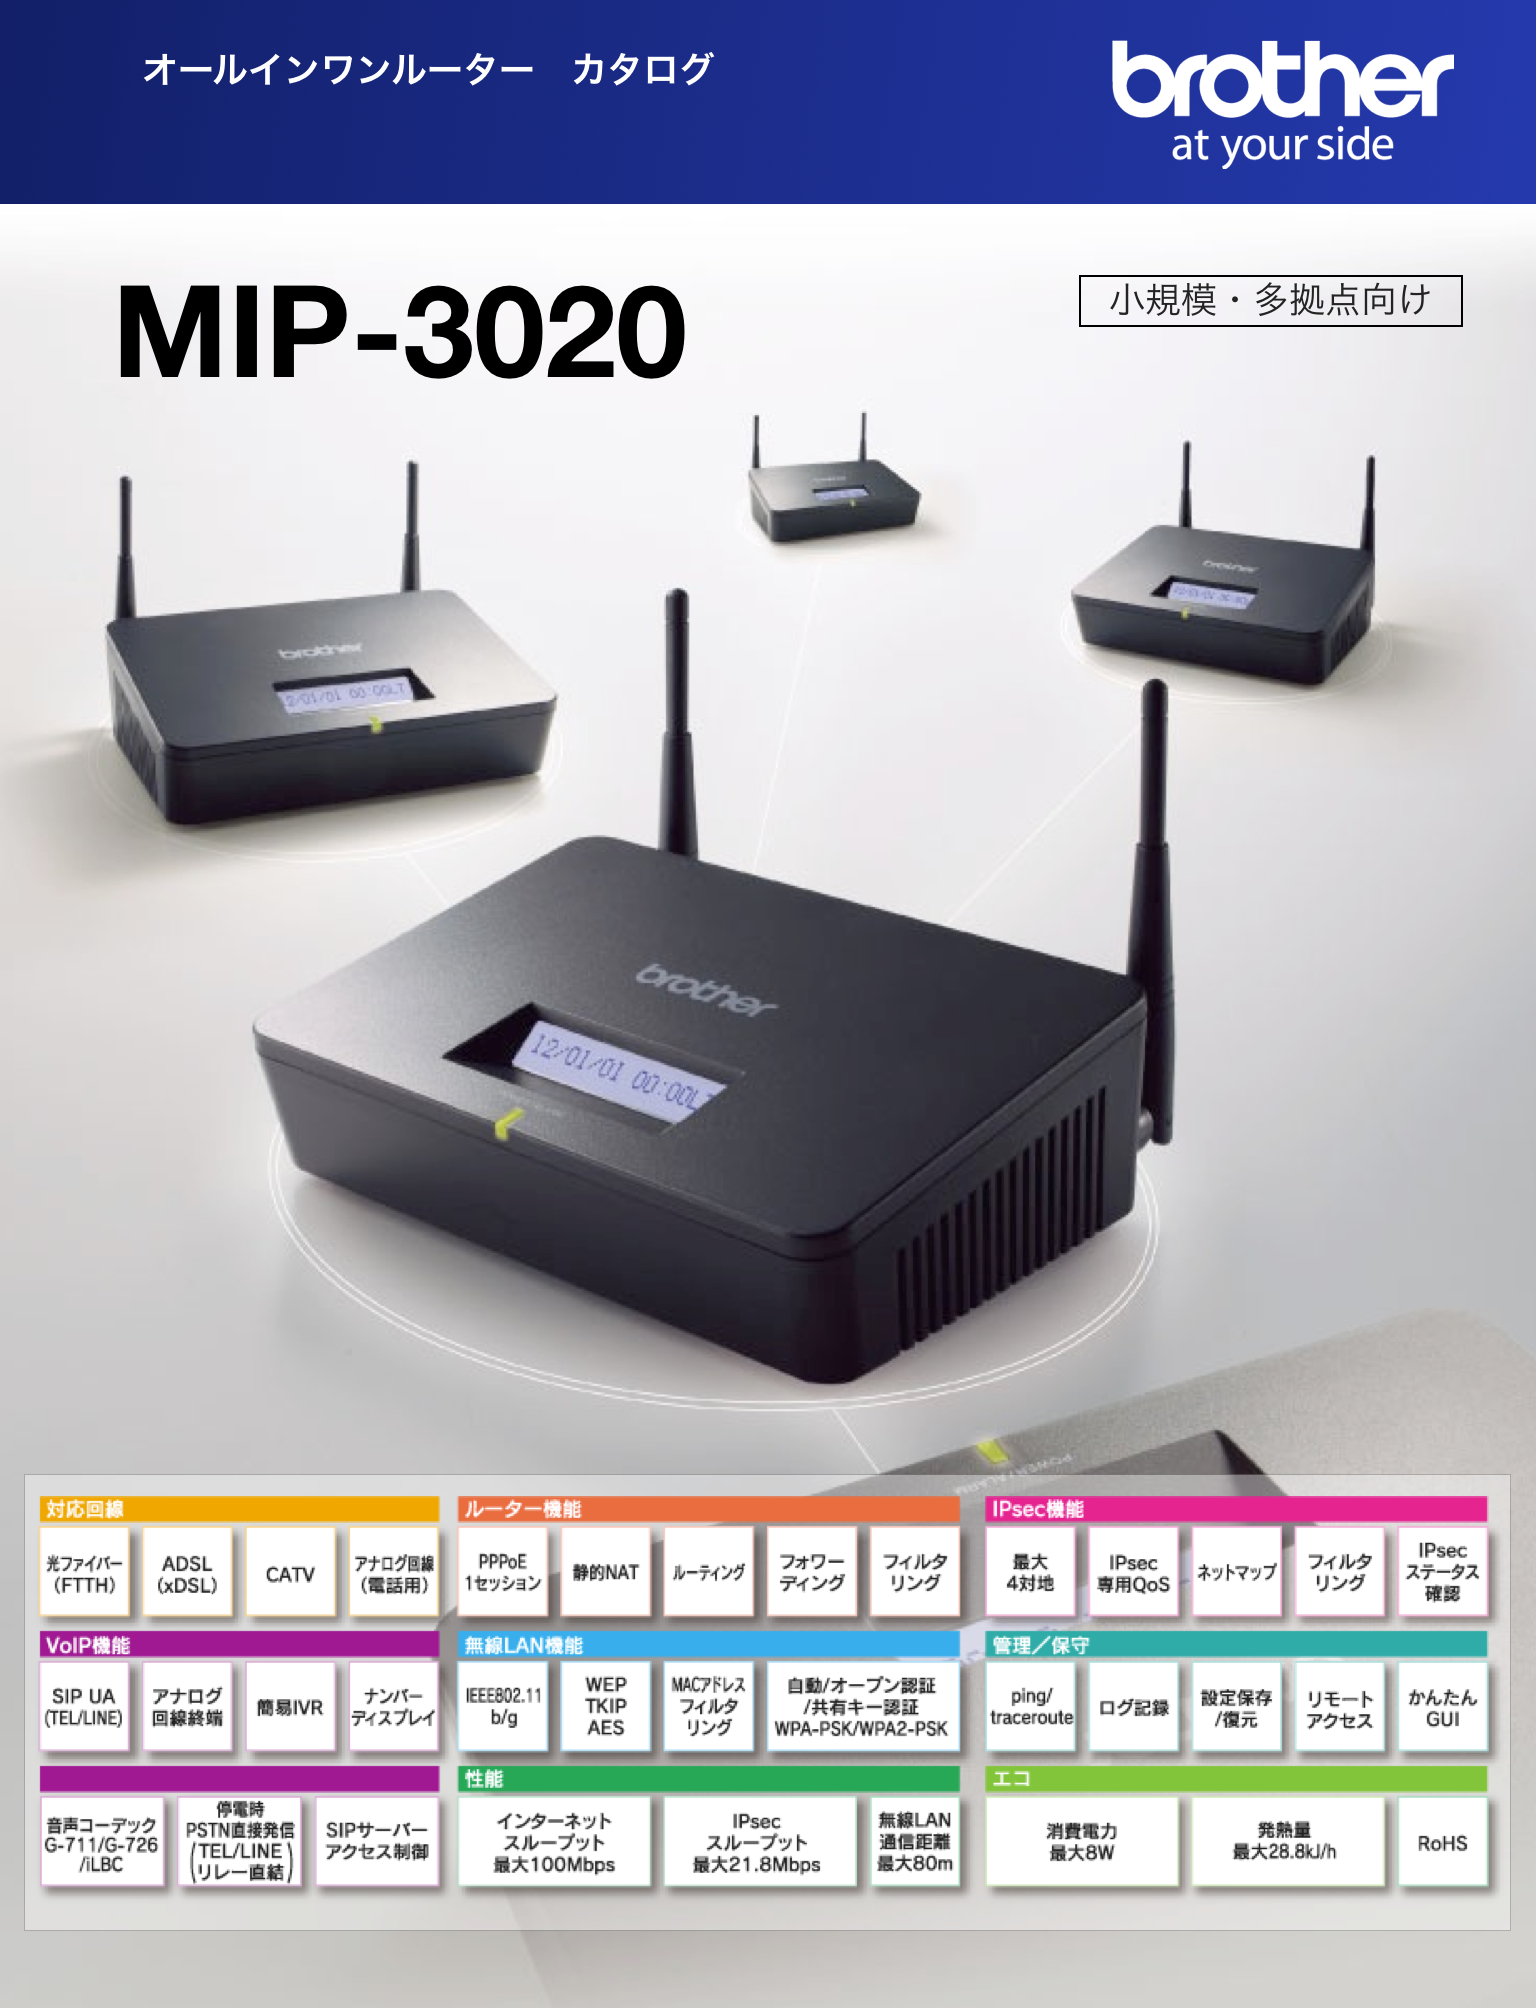 オールインワンルーターカタログ MIP-3020 - ブラザー販売株式会社 | DigiPam.com